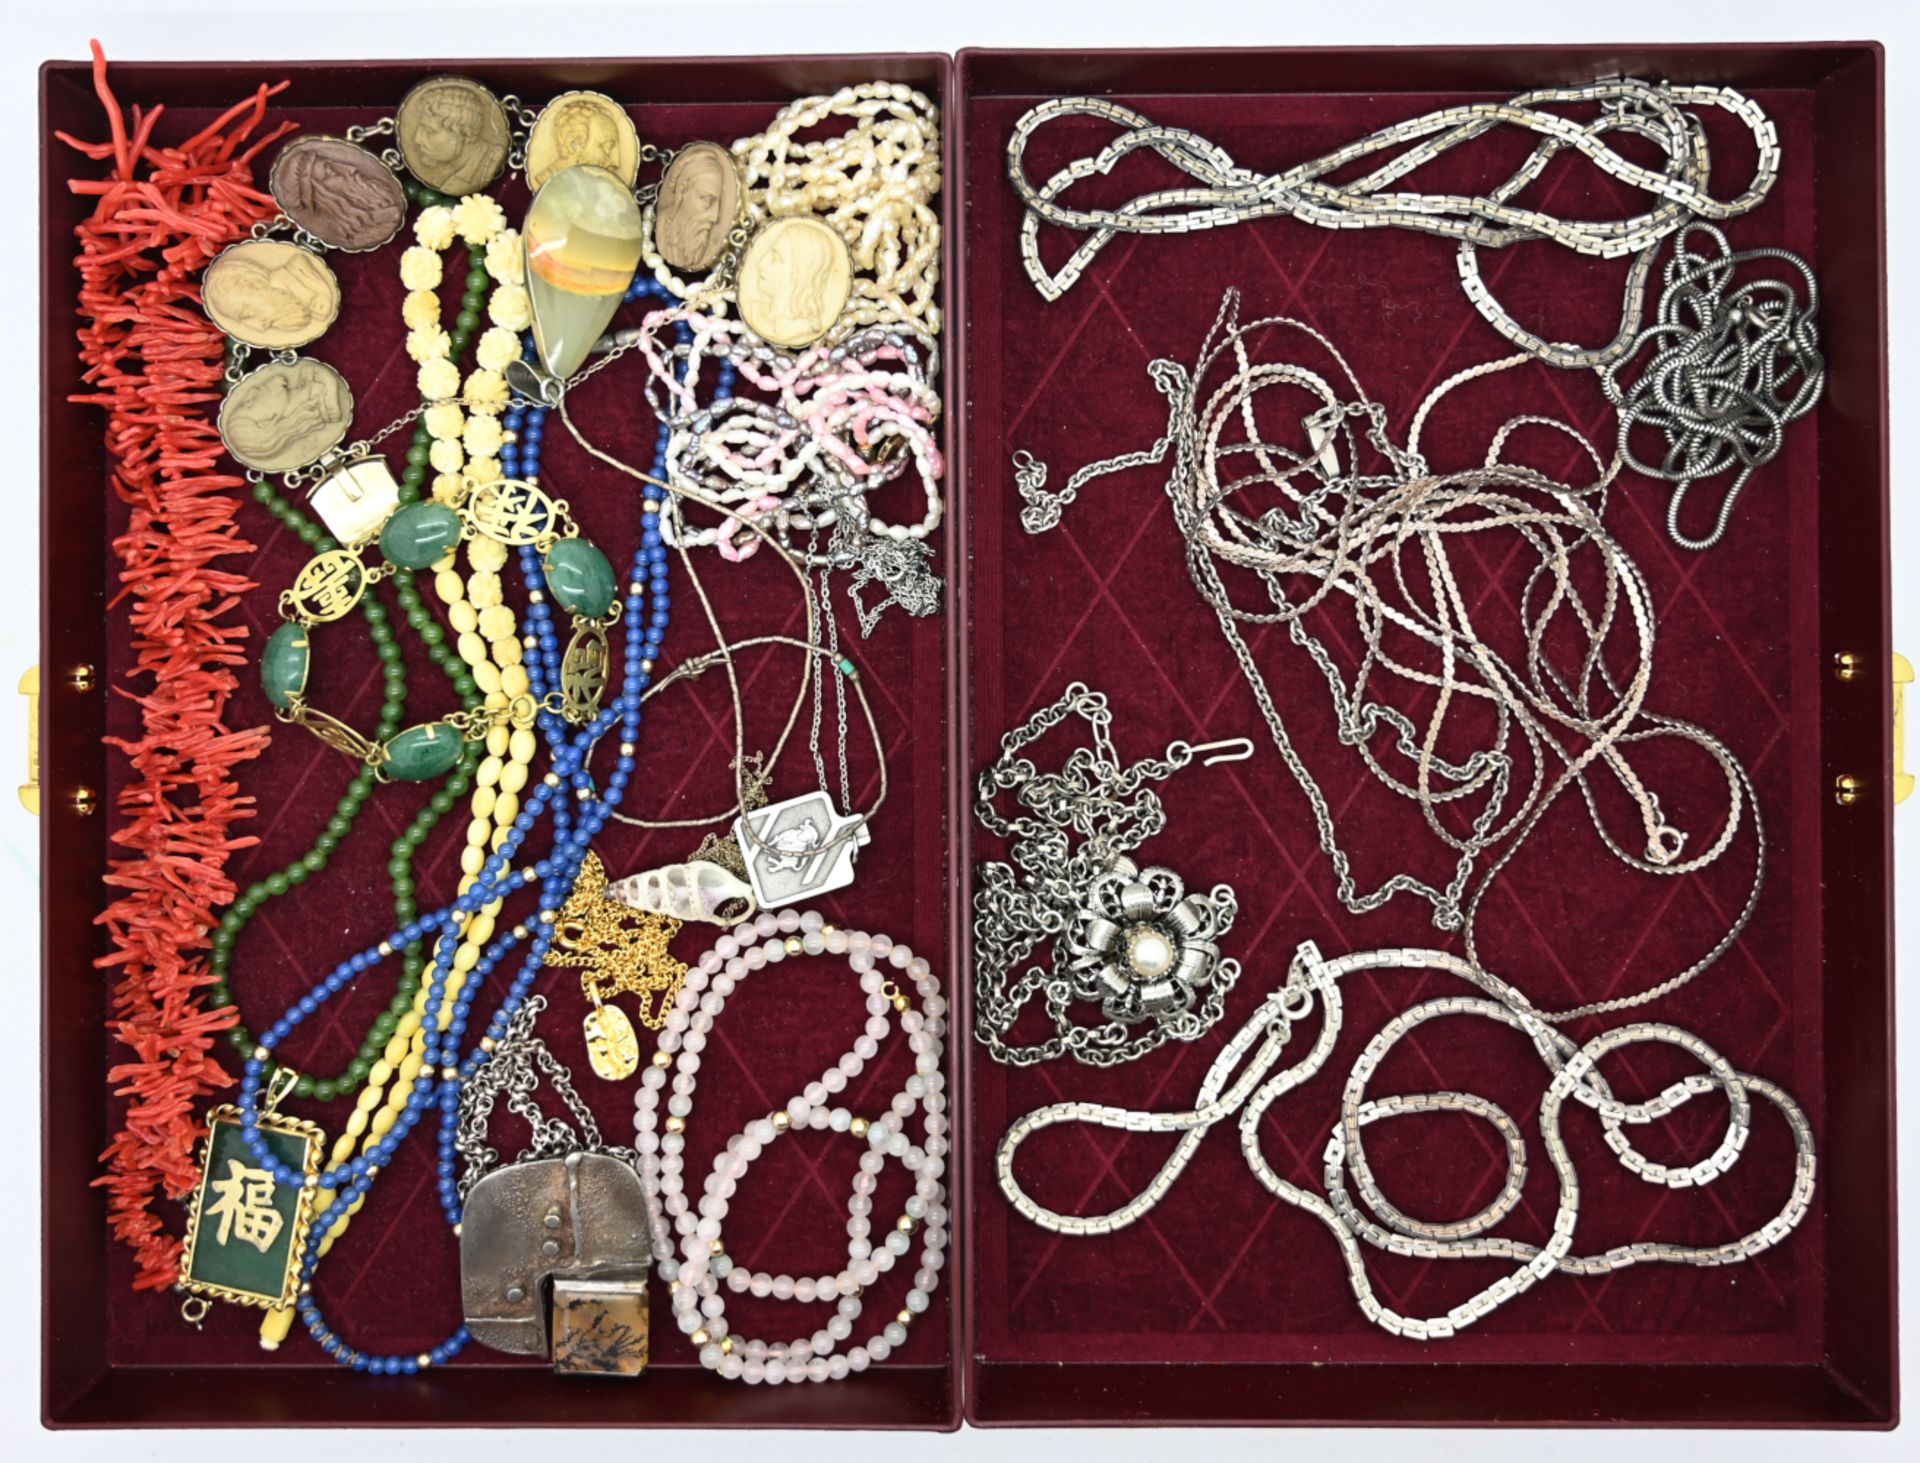 1 Konv. Schmuck Si. Metall Mode u.a. z.T. mit Korallen, Perlen, Granate, Mosaikarbeit, z.T. asiatisc - Bild 2 aus 2